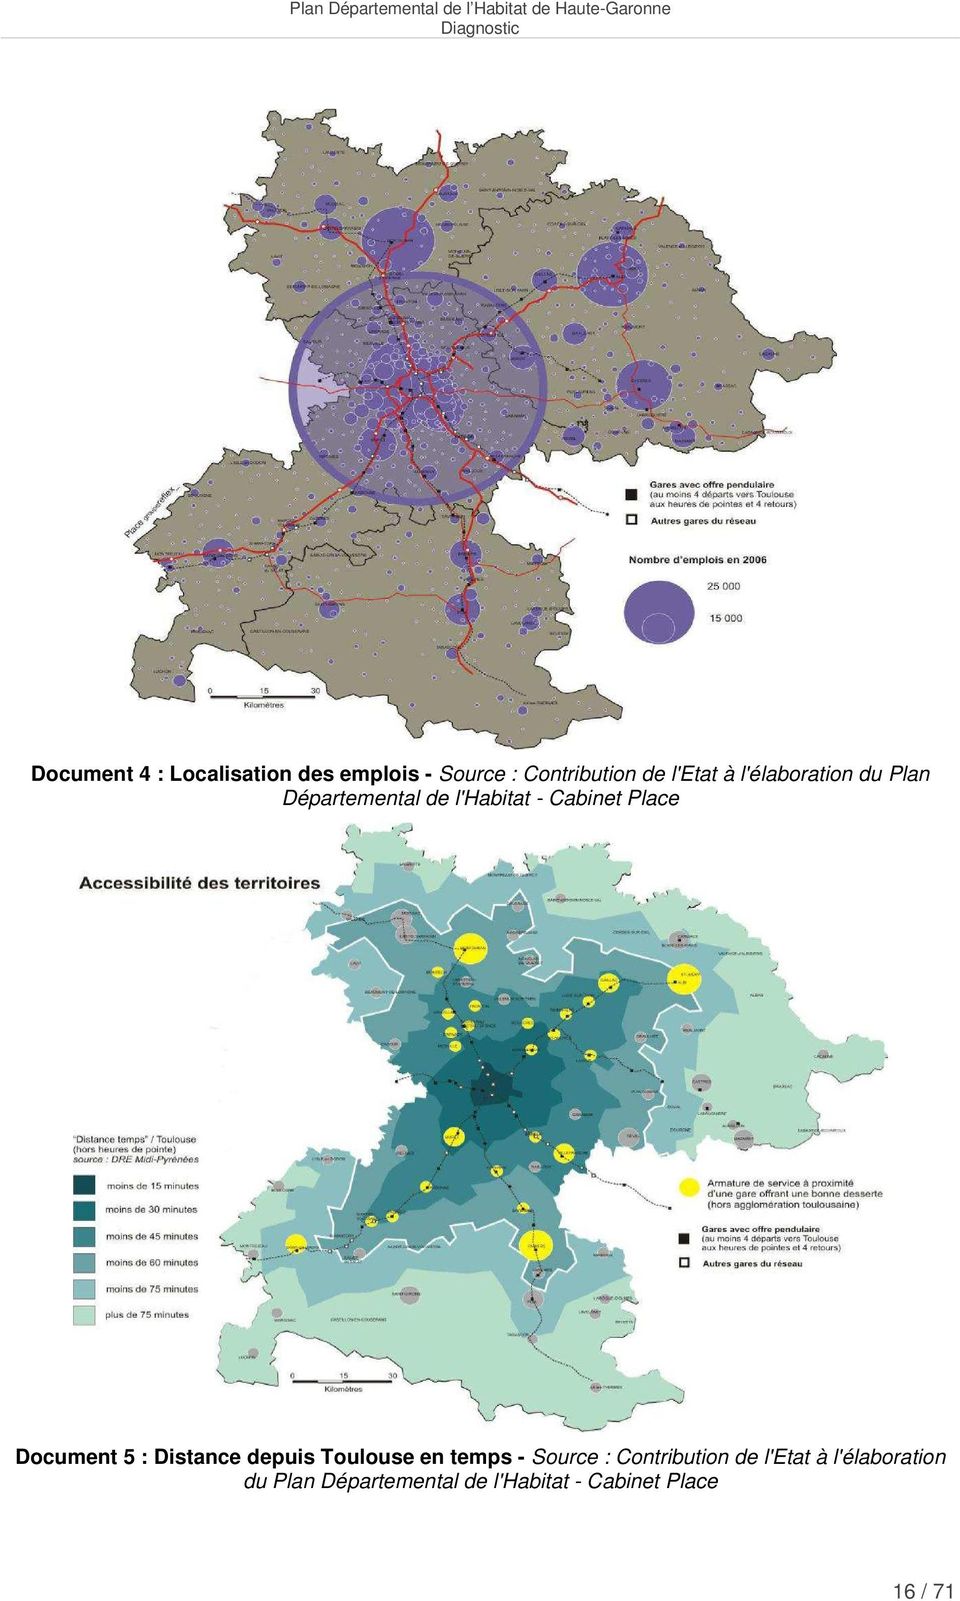 5 : Distance depuis Toulouse en temps - Source : Contribution de l'etat à